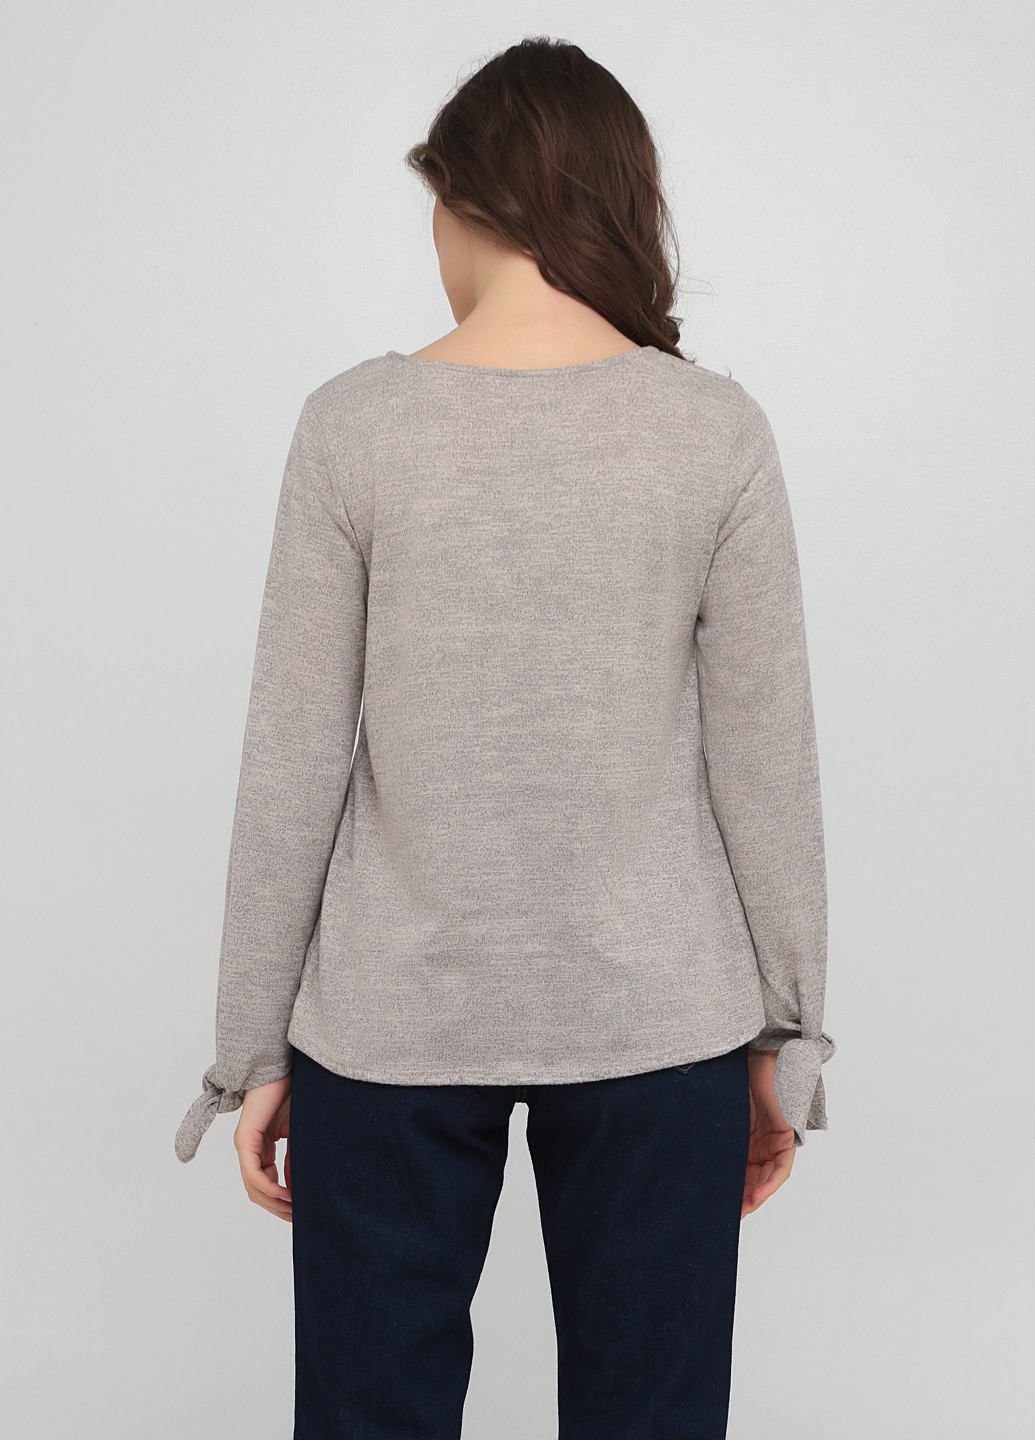 Серо-бежевый демисезонный пуловер пуловер Francesca's